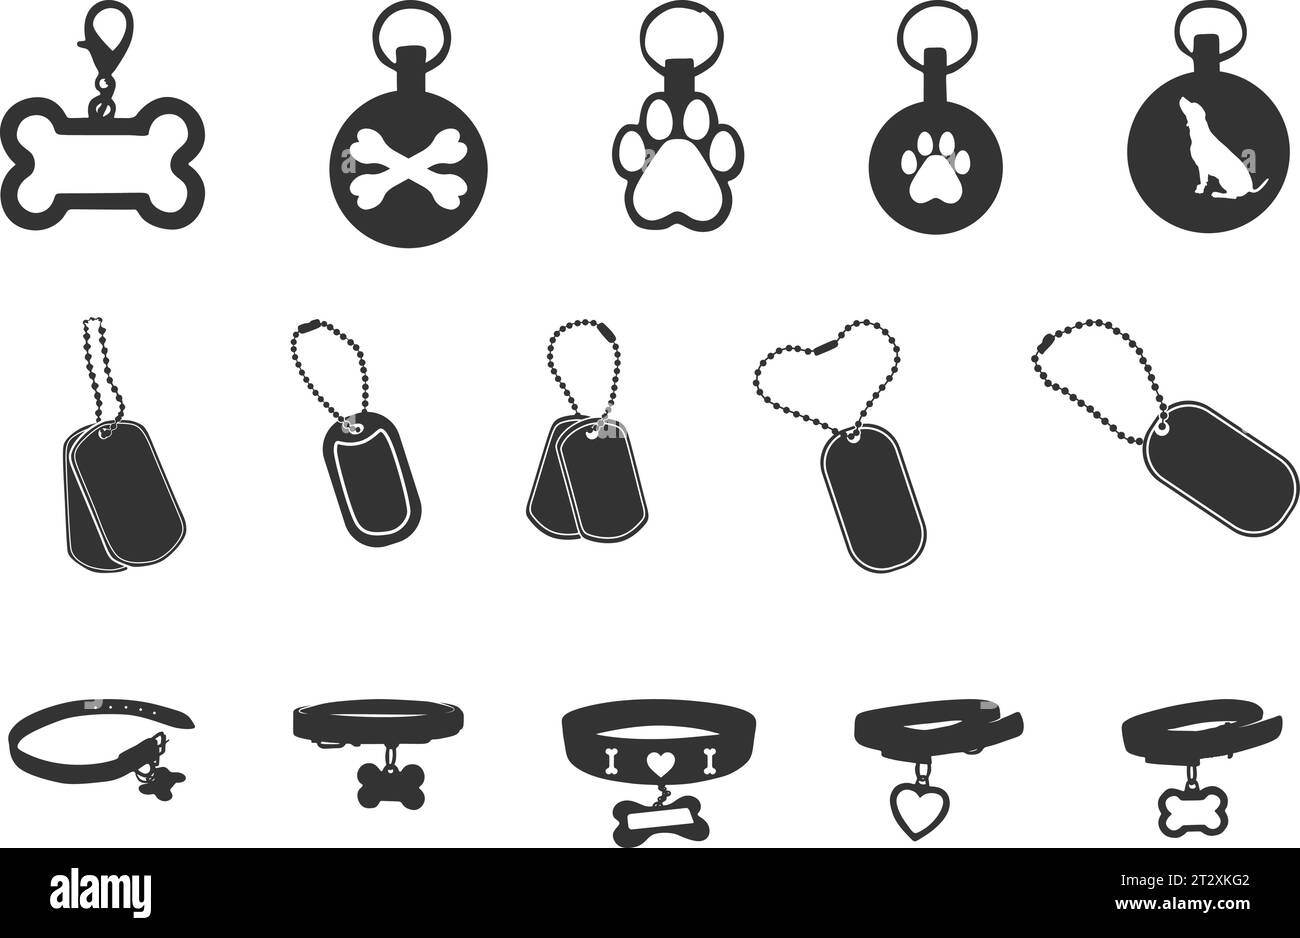 Silhouette dog tag, silhouette dog tag Army, silhouette colletto cane, silhouette anello cane, tag cane SVG, silhouette tag cane militare Illustrazione Vettoriale